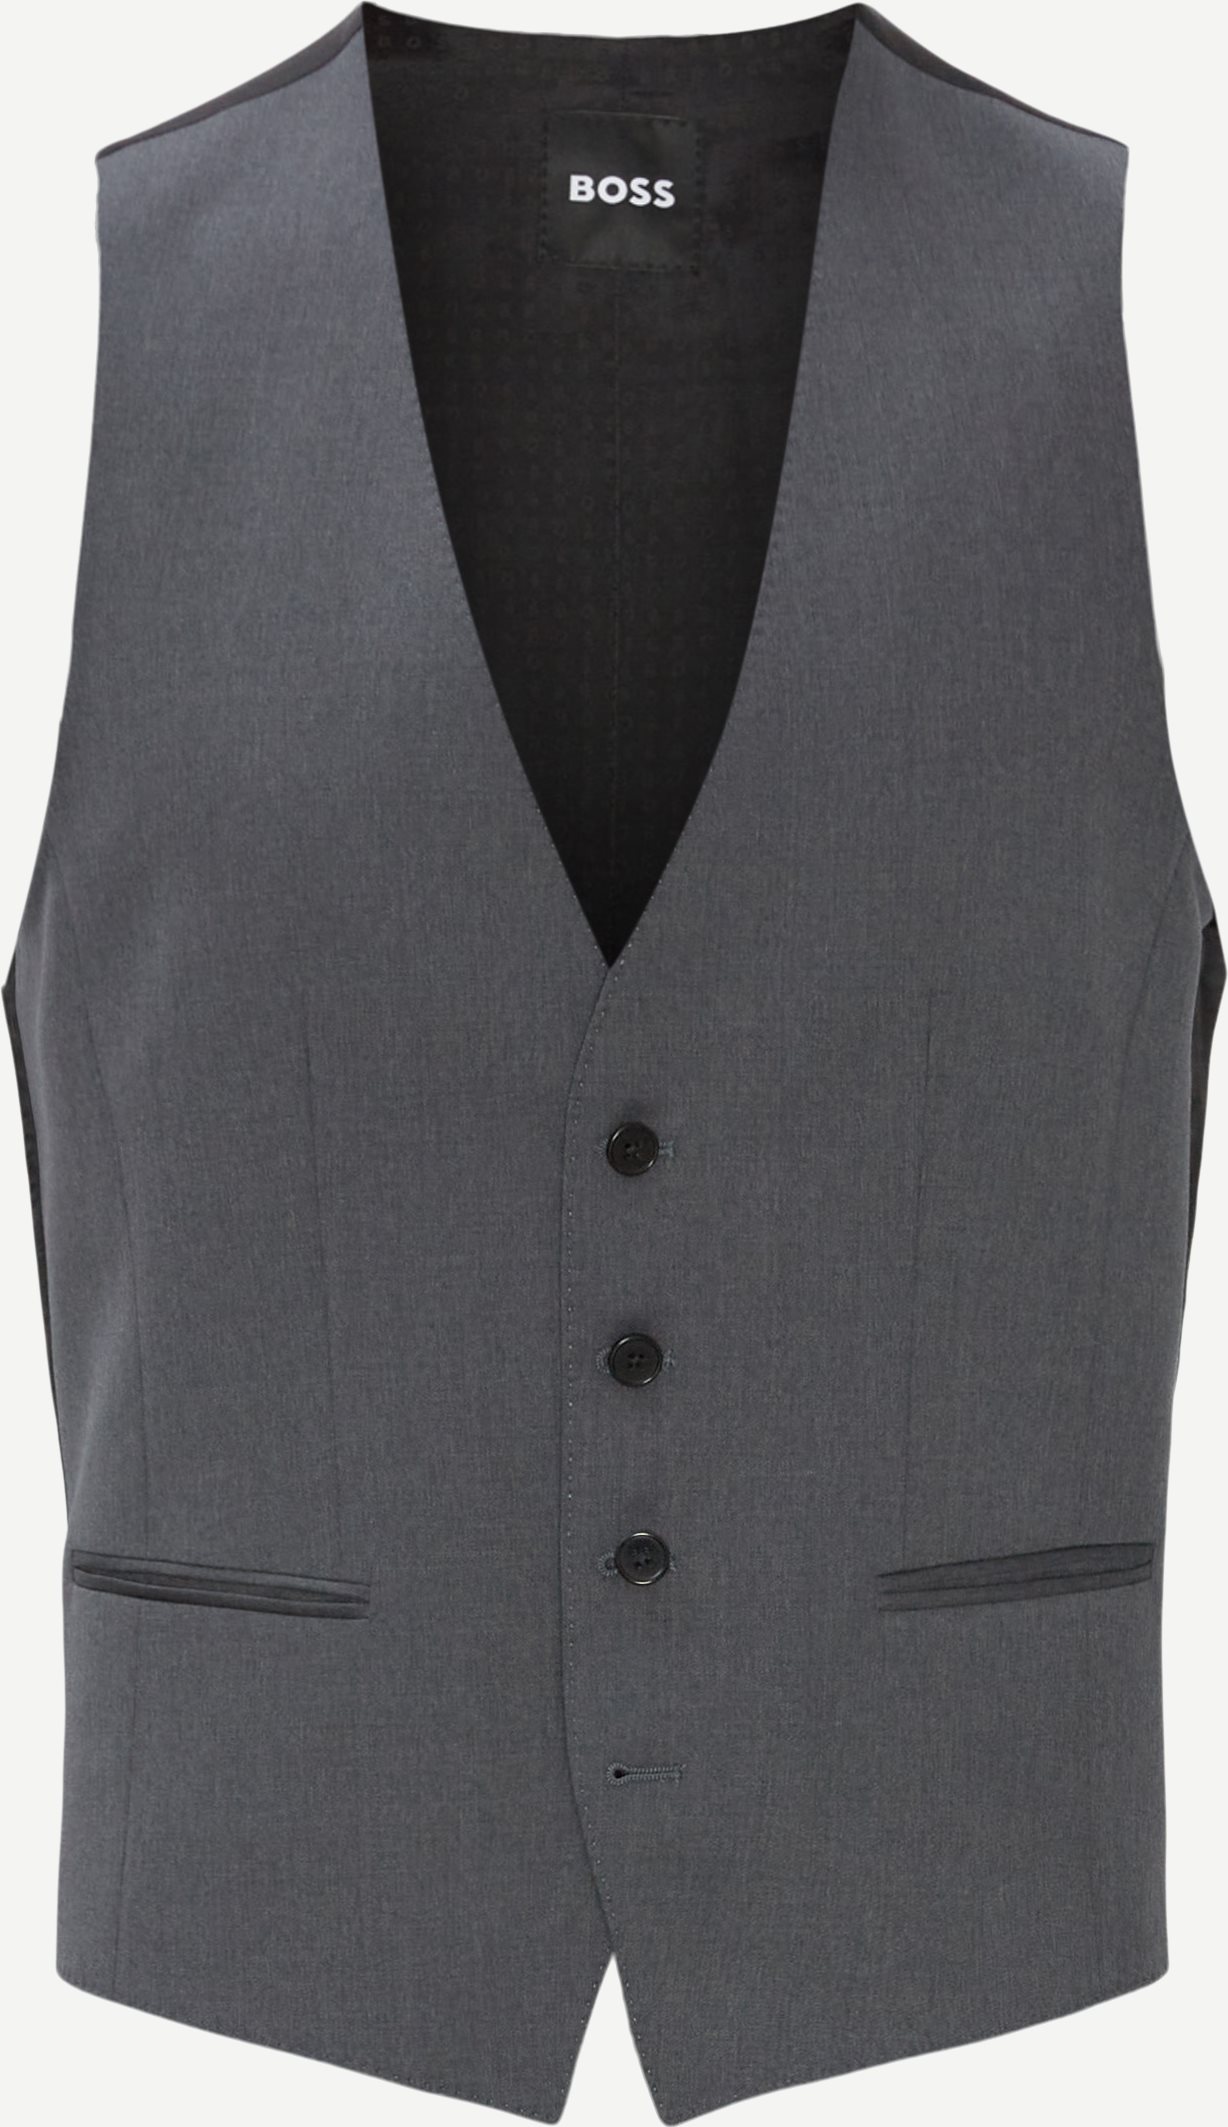 Vests - Slim fit - Grey